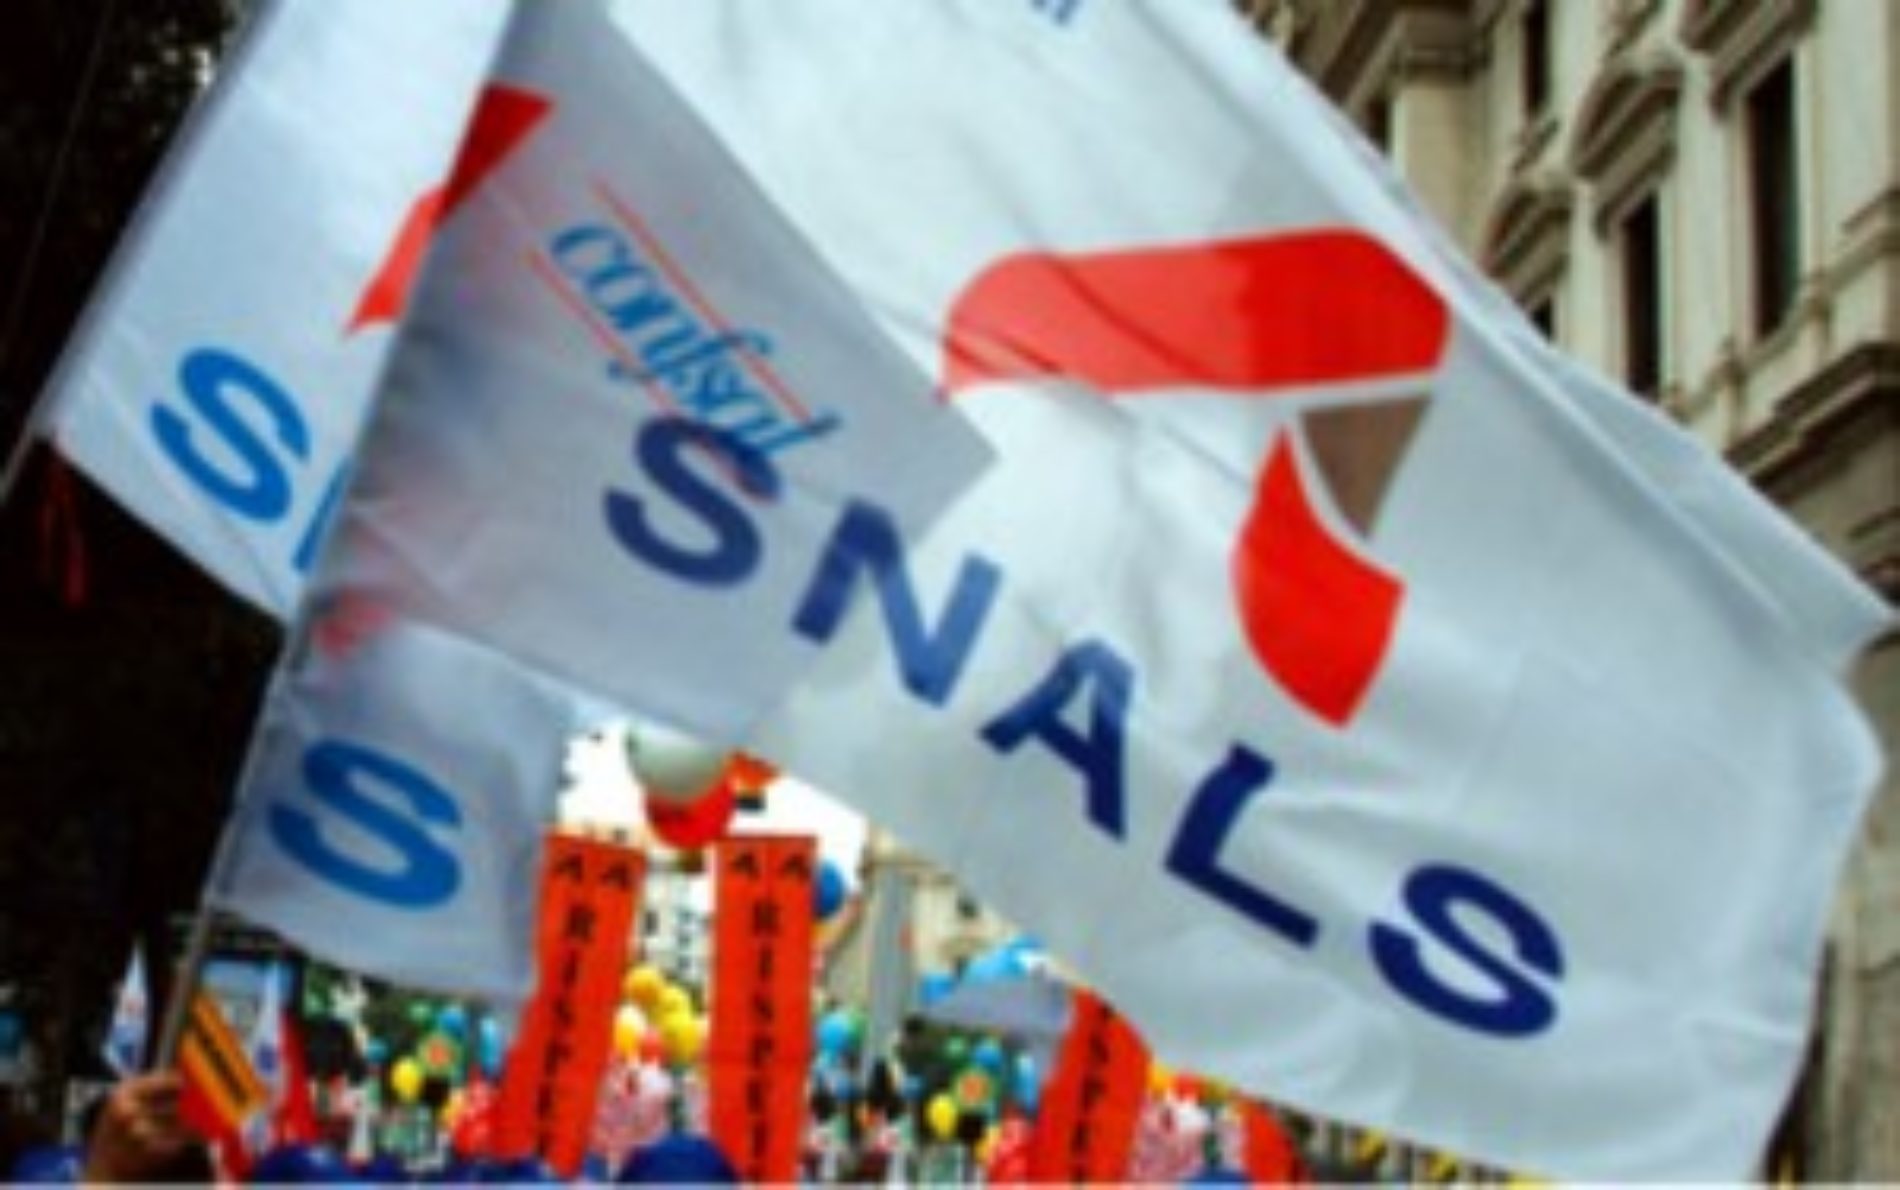 Formazione Professionale. Il sindacato Snals Confsal ed i lavoratori dell’Anfe regionale chiedono l’intervento dell’assessore Marziano